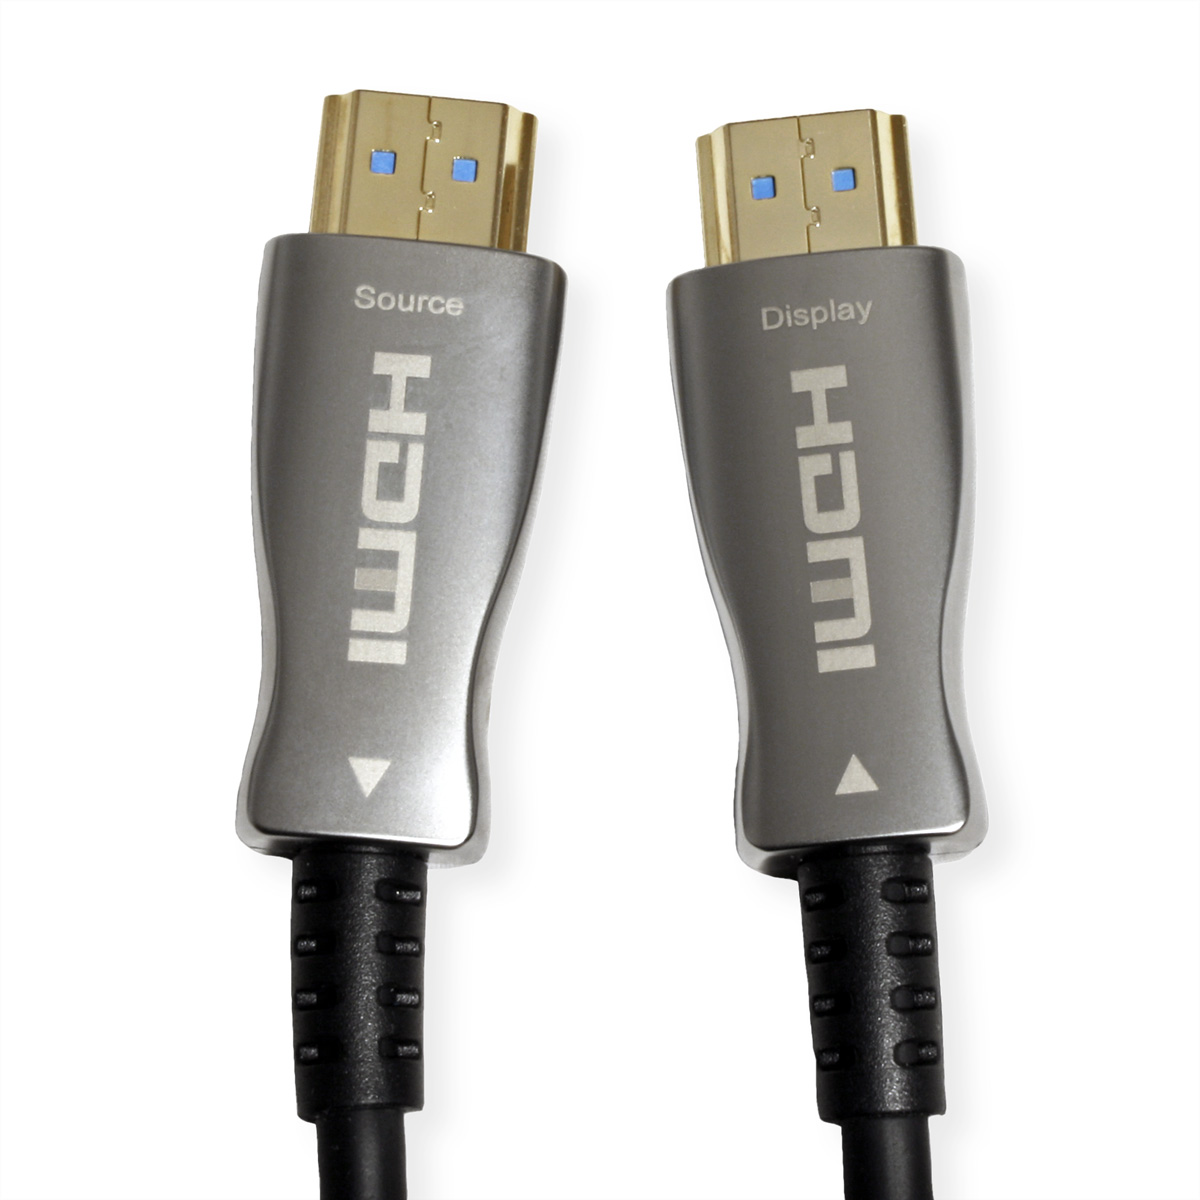 Kabel HDMI Optisches HDMI Ethernet Ultra HD 4K mit Kabel Ultra Aktiv VALUE